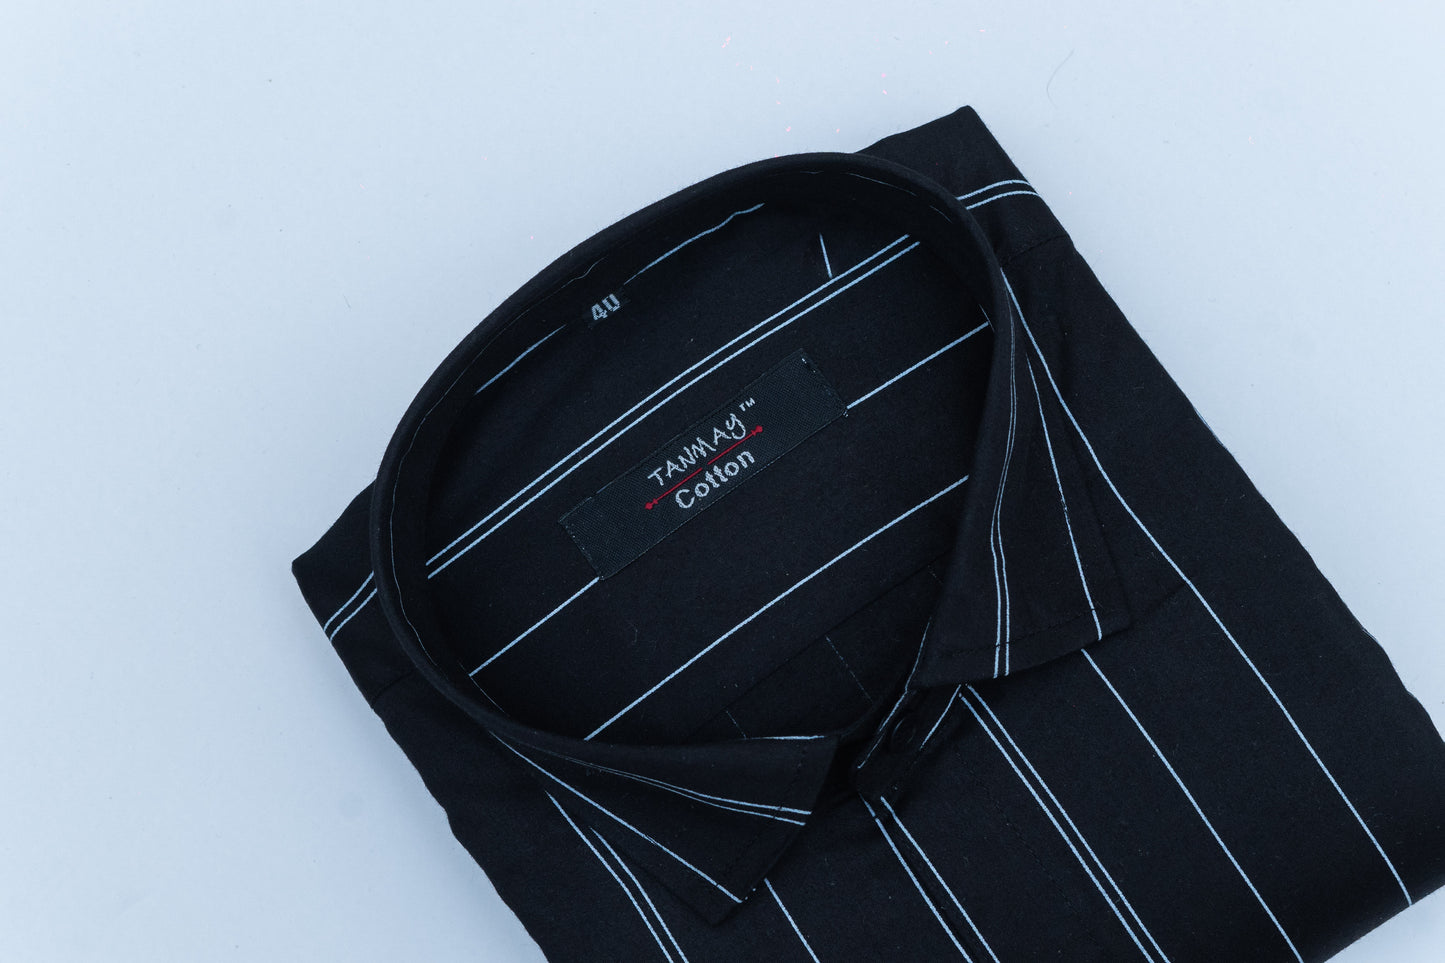 Black Color 100% Lining Shirt For Men's